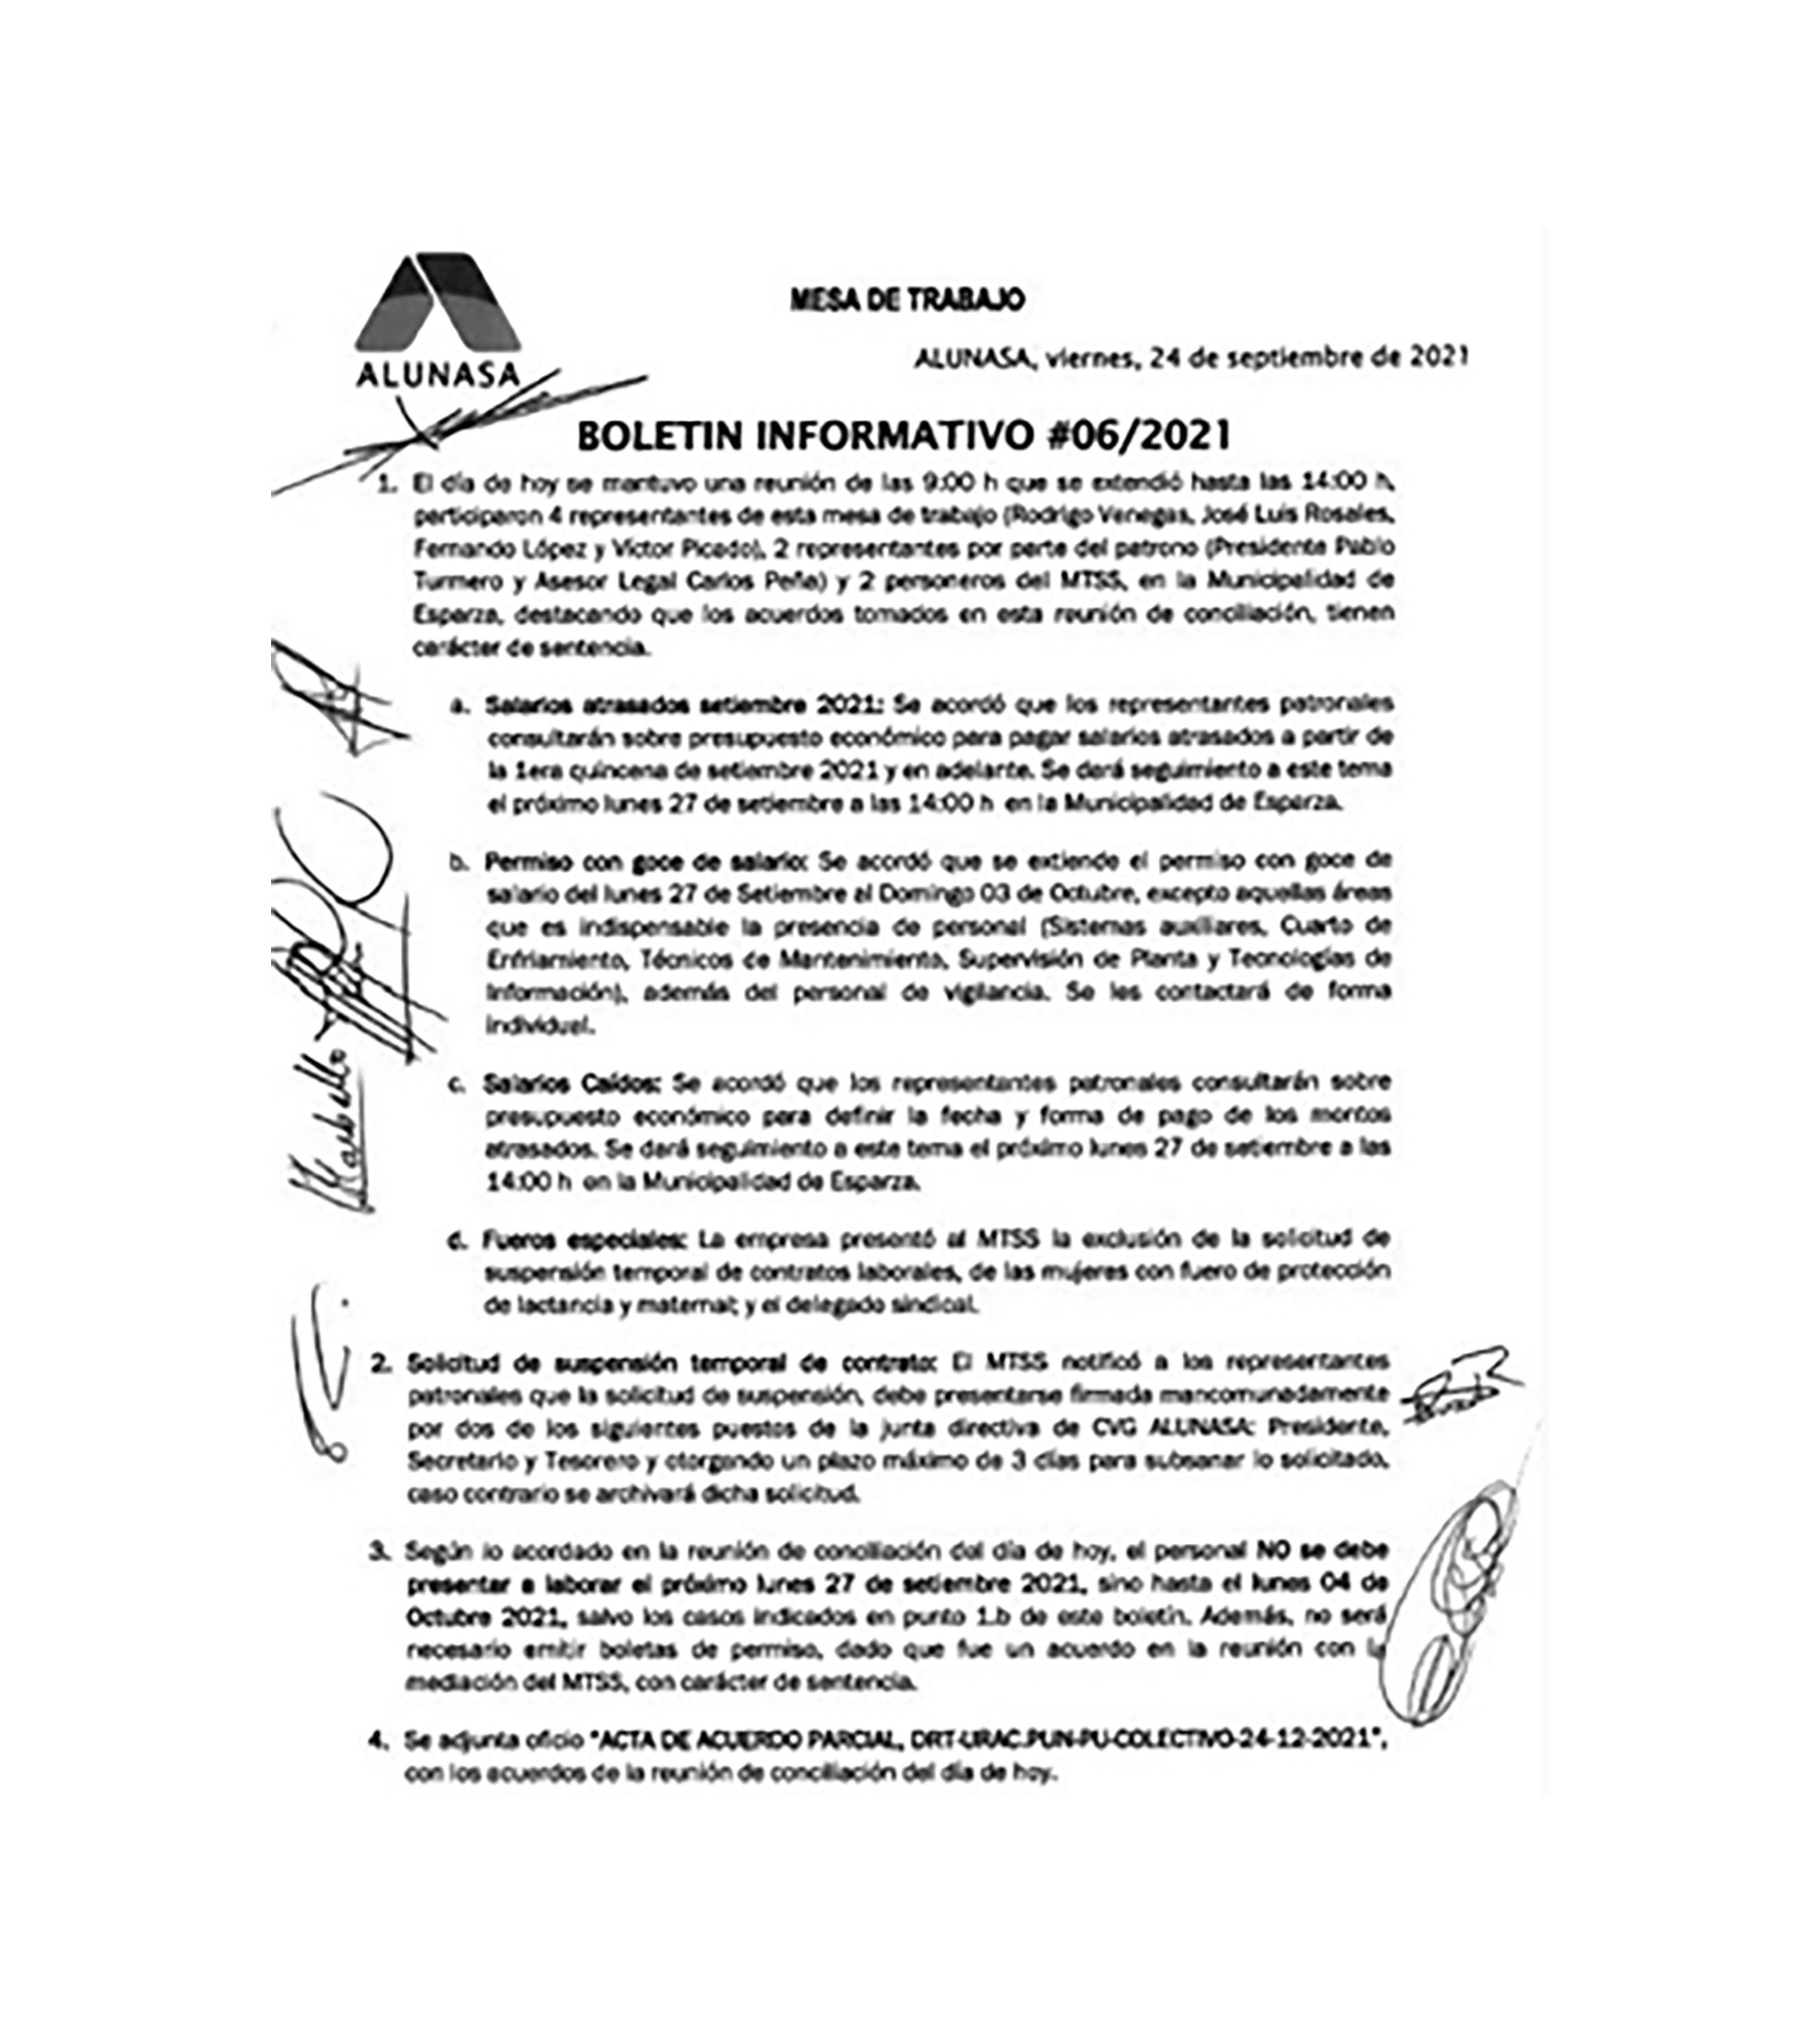 Los compromisos de los funcionarios venezolanos ante el Ministerio de Costa Rica, Boletín Informativo 06-2021 del 24 de septiembre